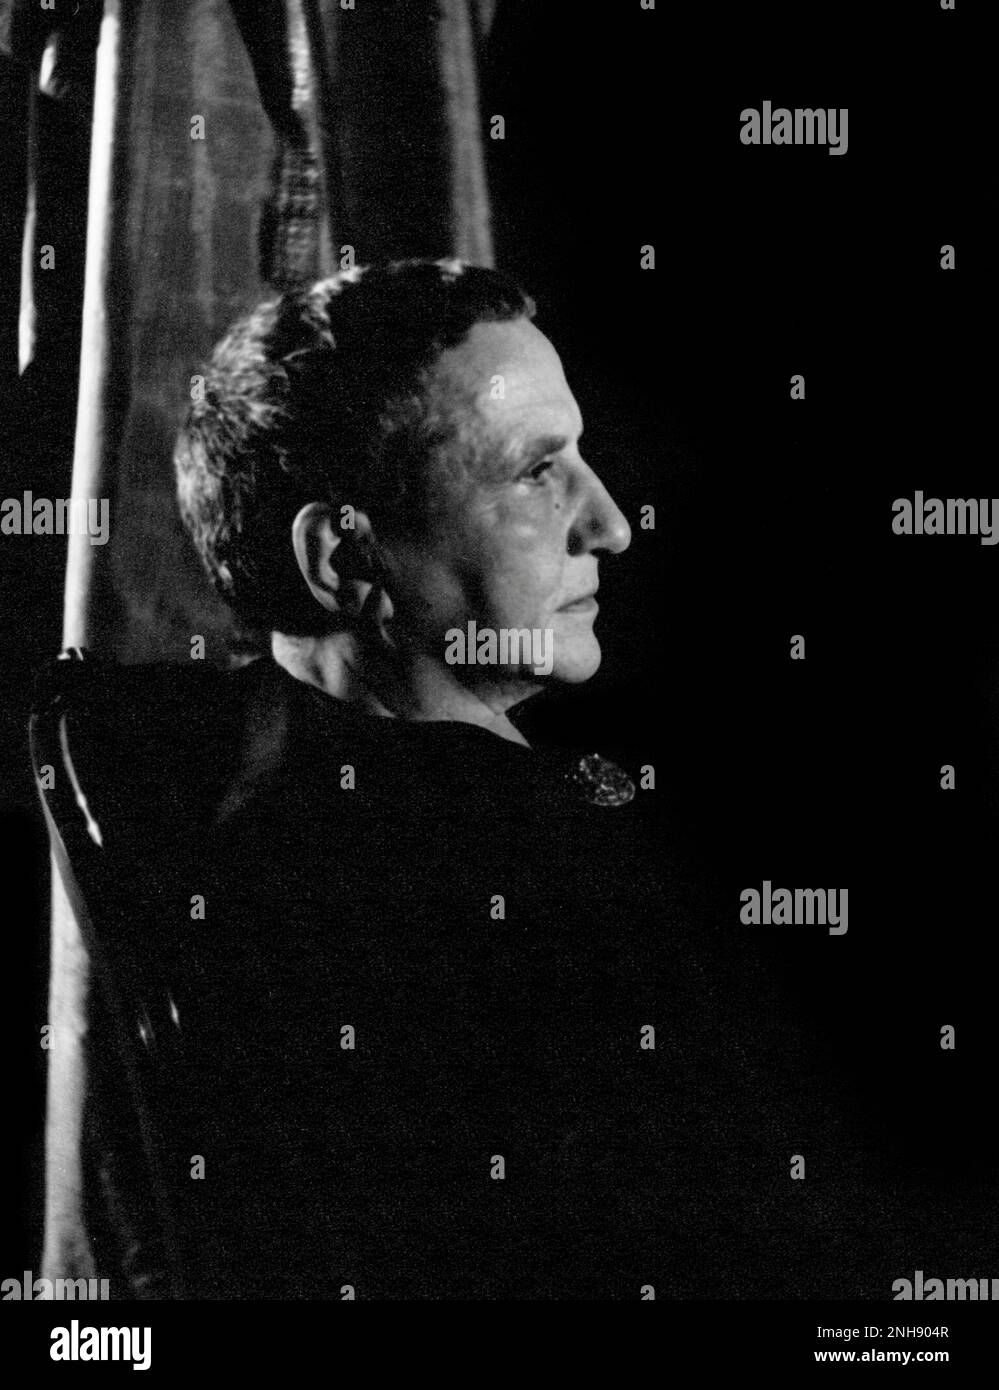 Gertrude Stein (1874-1946), amerikanischer Schriftsteller, Dichter und Dramatiker. Fotografiert von Carl Van Vechten, 4. November 1934. Stockfoto